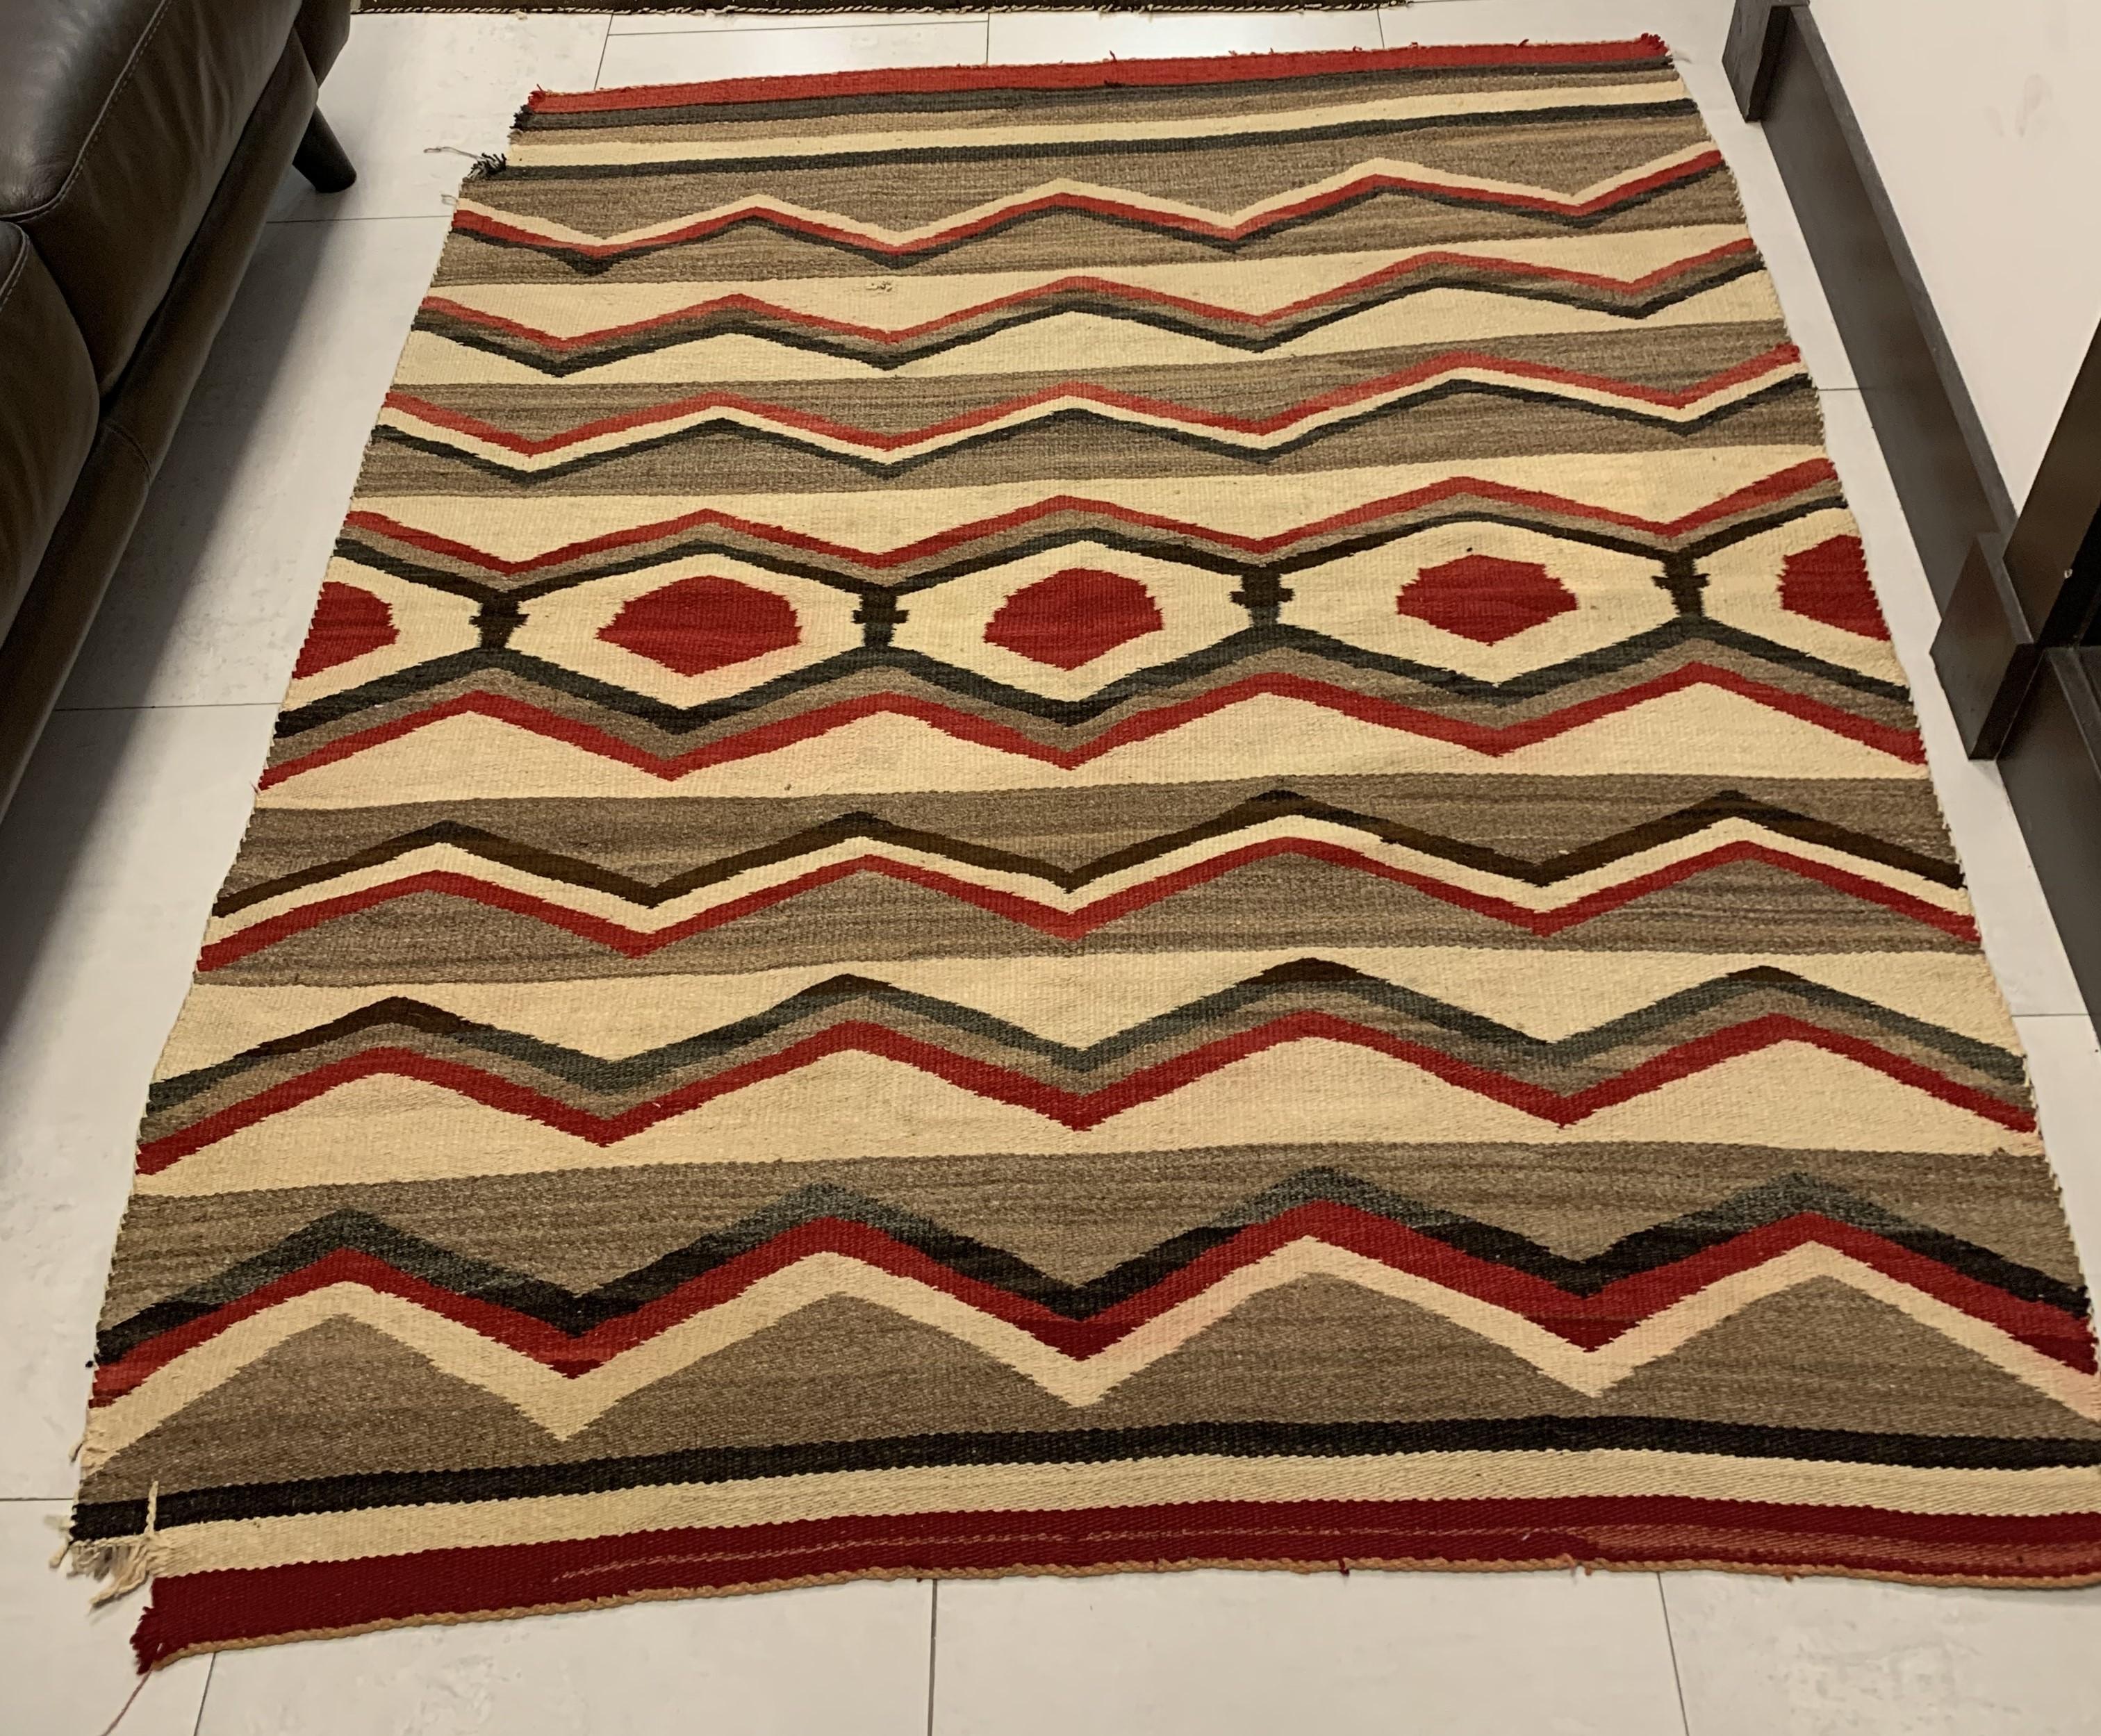 Wir stellen unsere handgefertigte antike Navajo-Teppichdecke vor, ein fesselndes, geschichtsträchtiges Stück. Mit den Maßen 4,6' x 5,4' (140cm x 164cm) trägt dieser Teppich aus den frühen 1900er Jahren die Spuren der Zeit, einschließlich einer